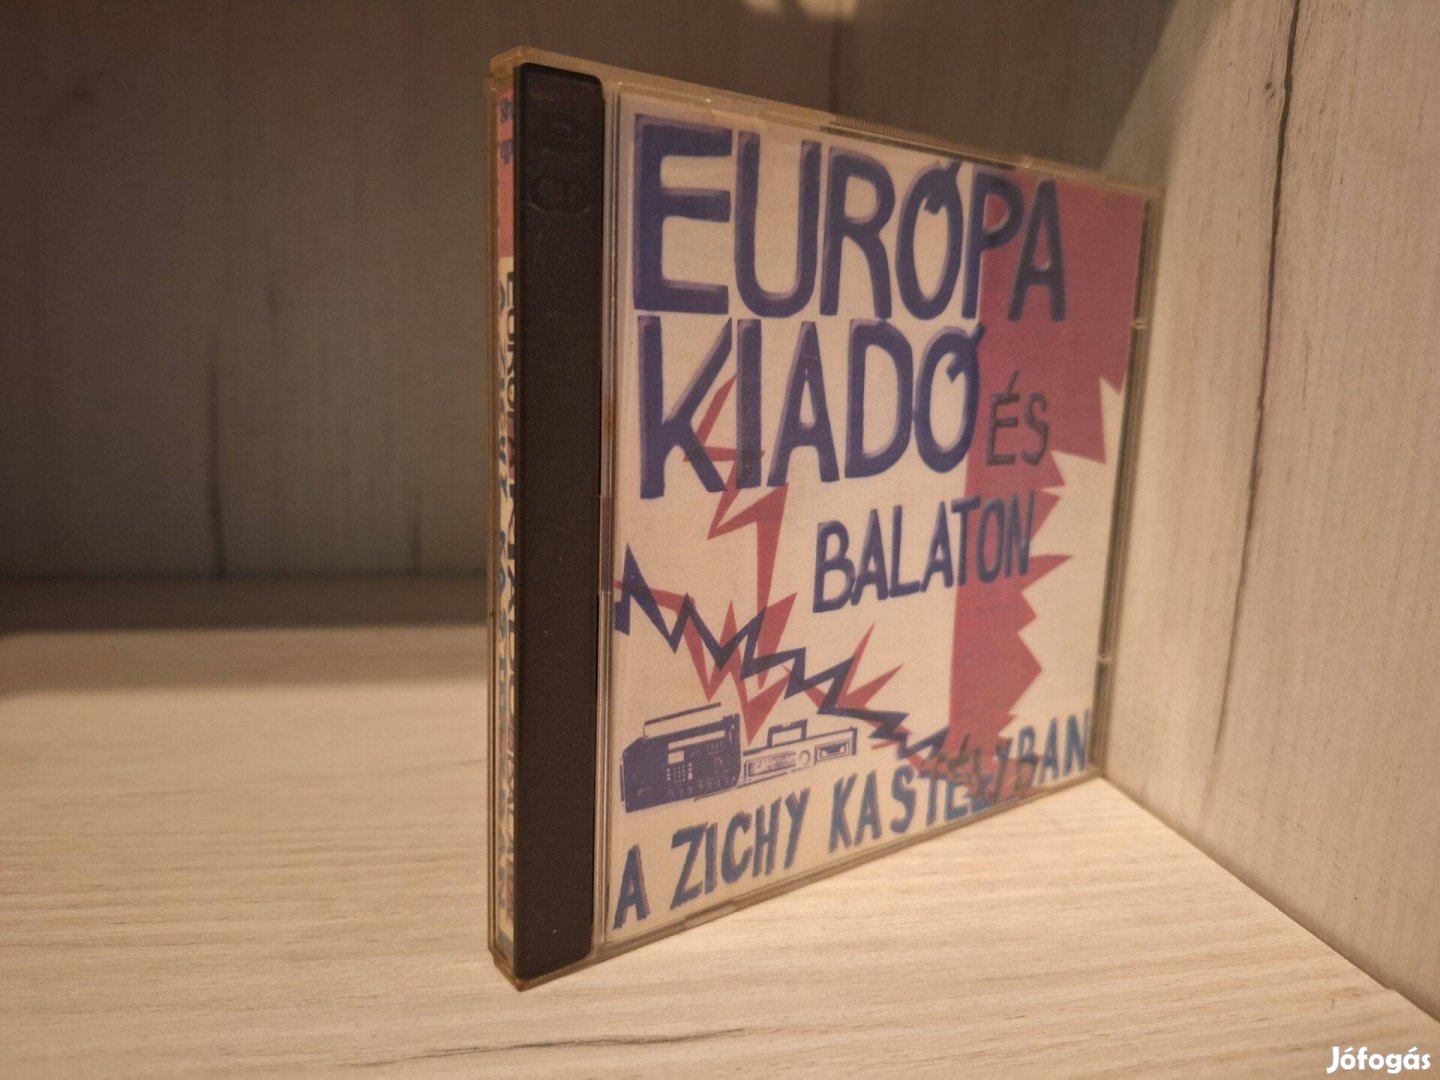 Európa Kiadó és Balaton - A Zichy Kastélyban - dupla CD